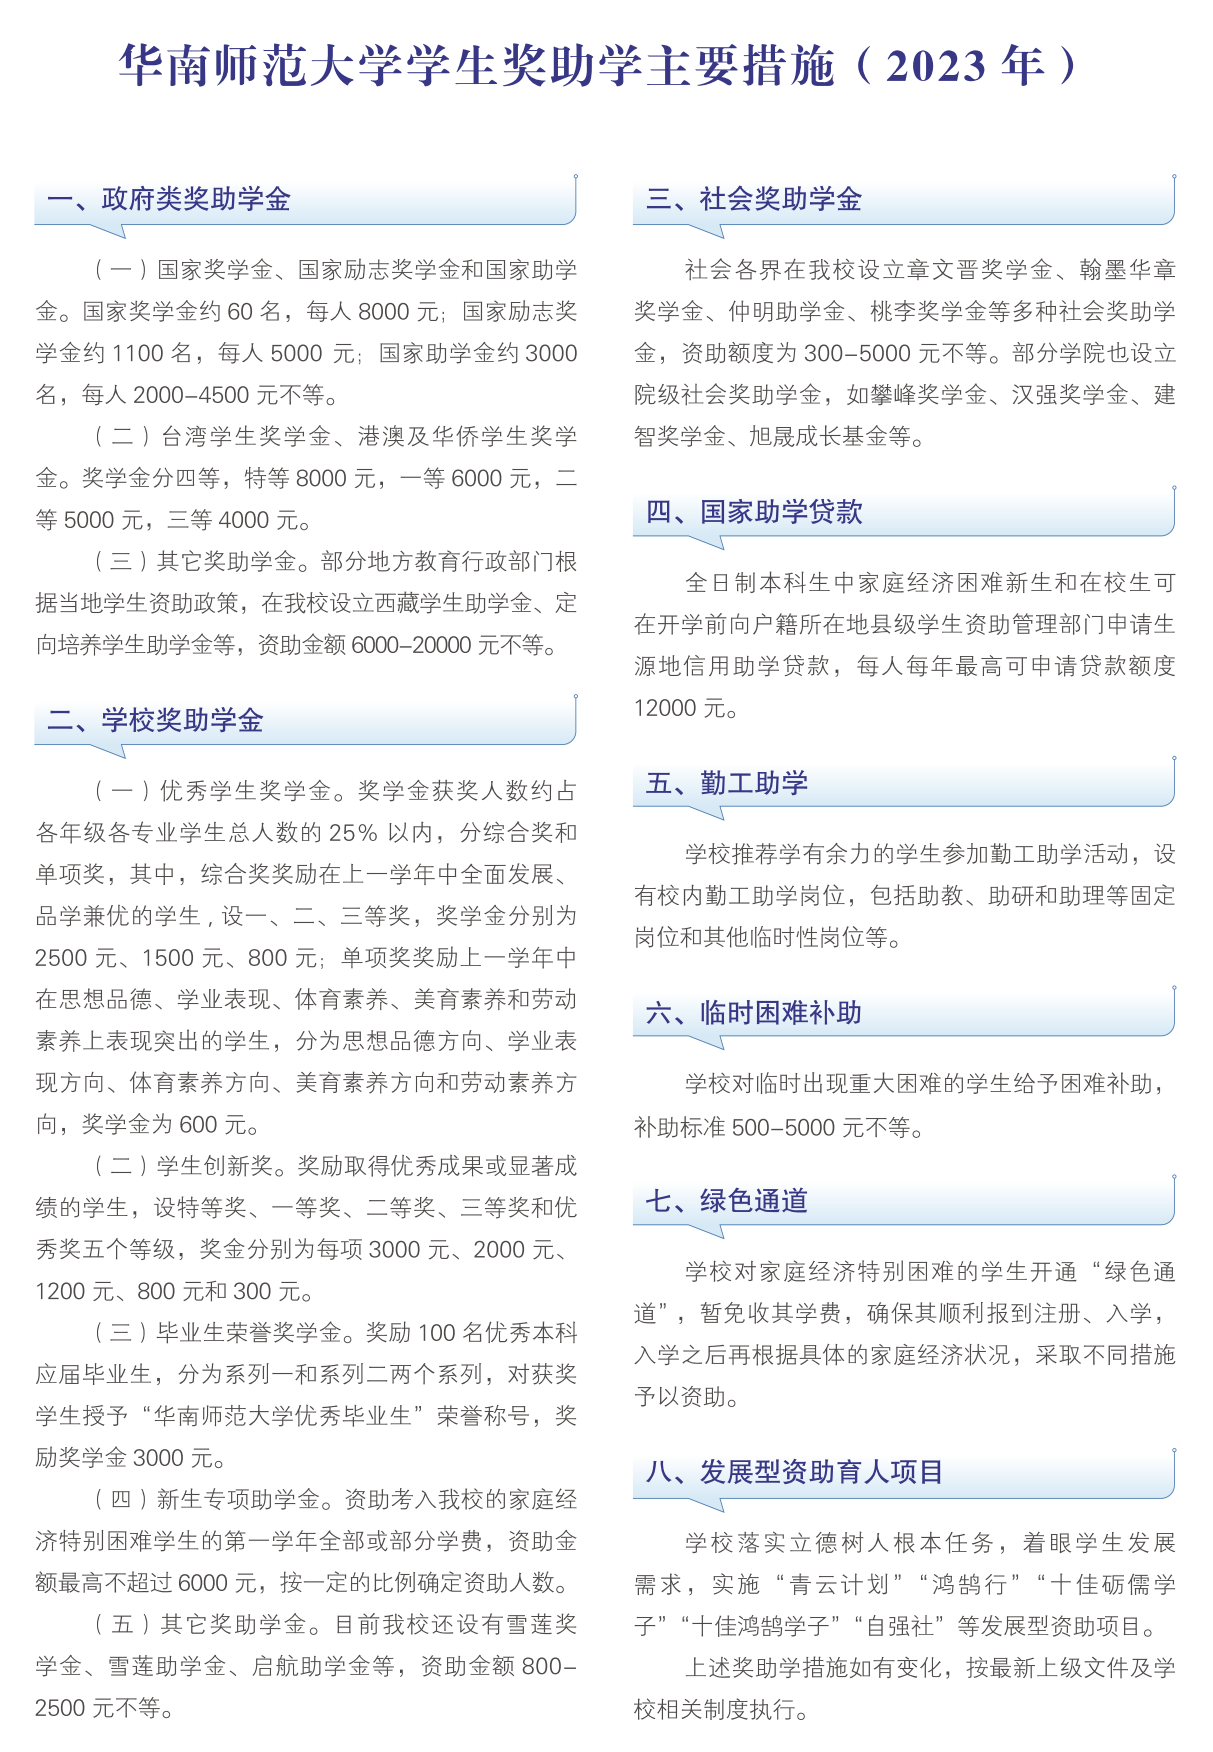 华南师范大学－2023年奖助学主要措施